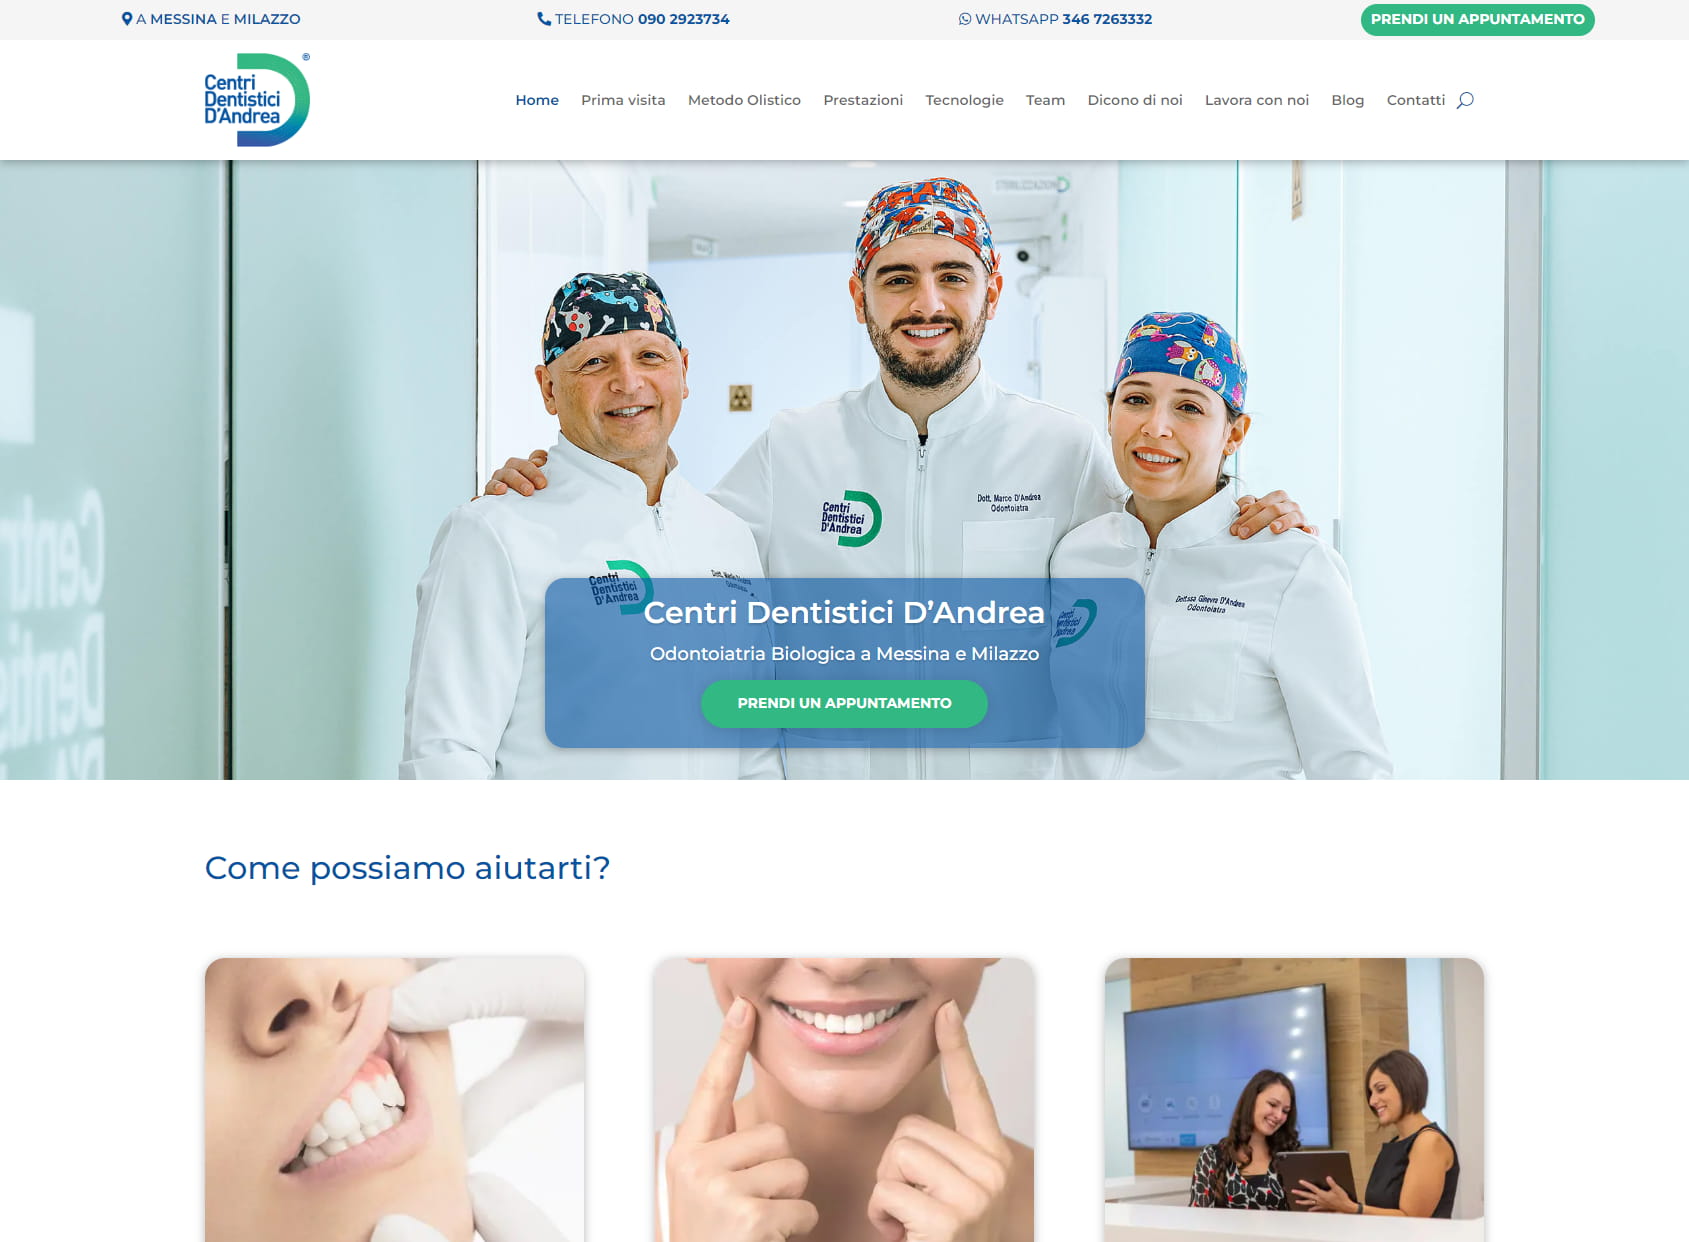 Centri Dentistici D'Andrea